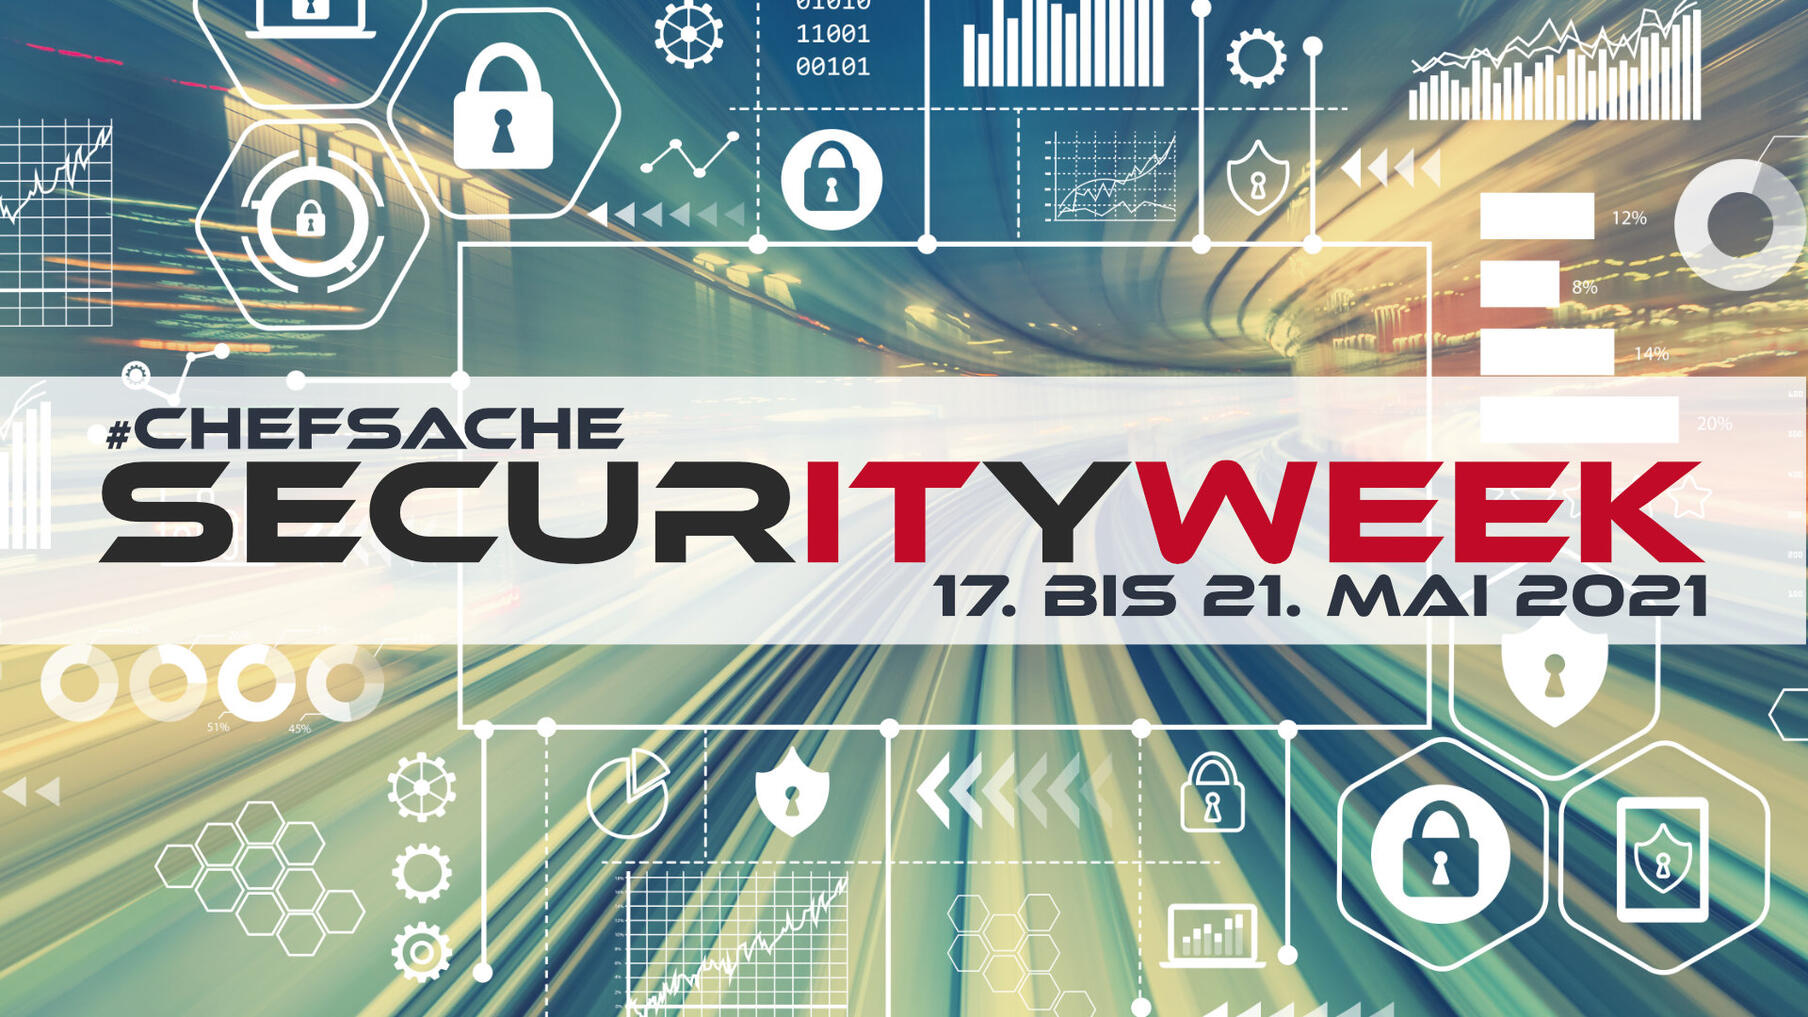 Chefsache: SecurITyWEEK | Eine Woche Know-how, Kontakte und Inspiration!